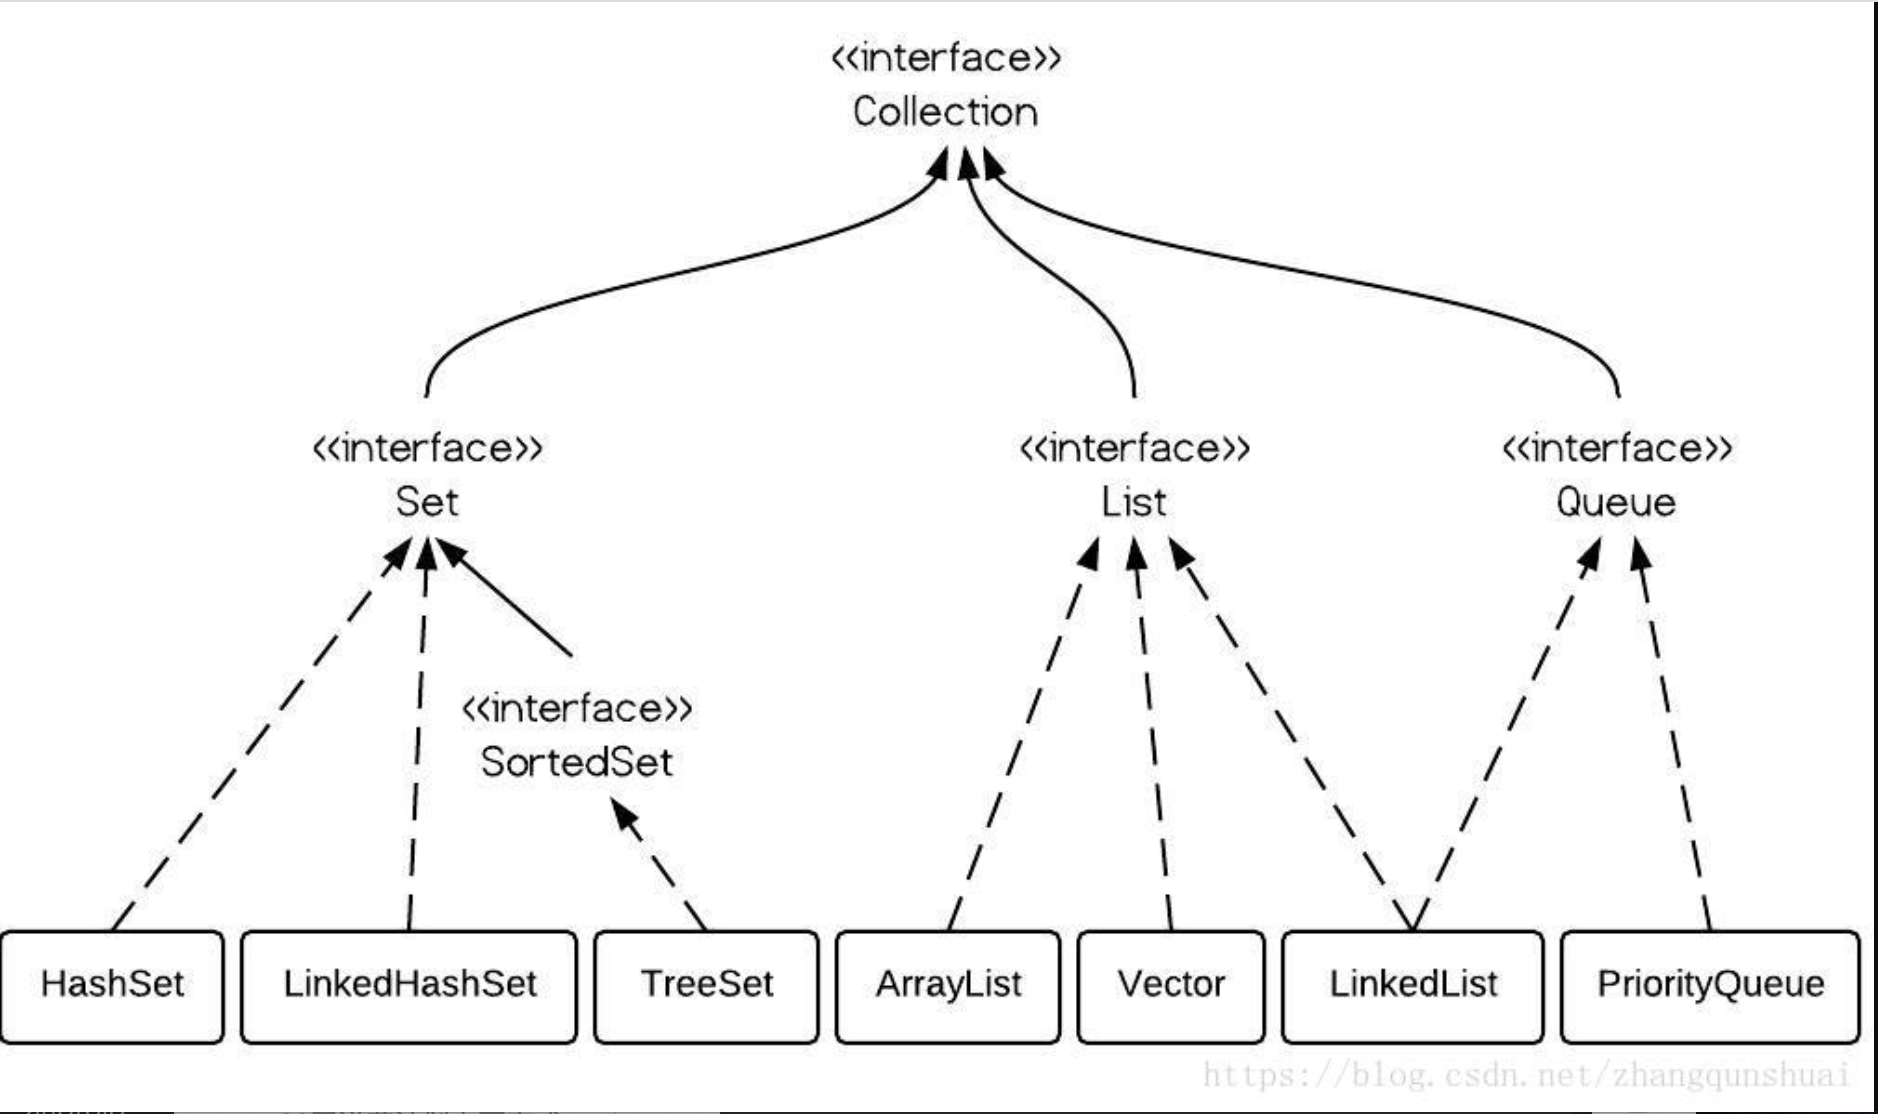 Очередь java. Иерархия интерфейсов коллекций java. Структура коллекций java. Java collections Framework иерархия. Java collections Hierarchy.